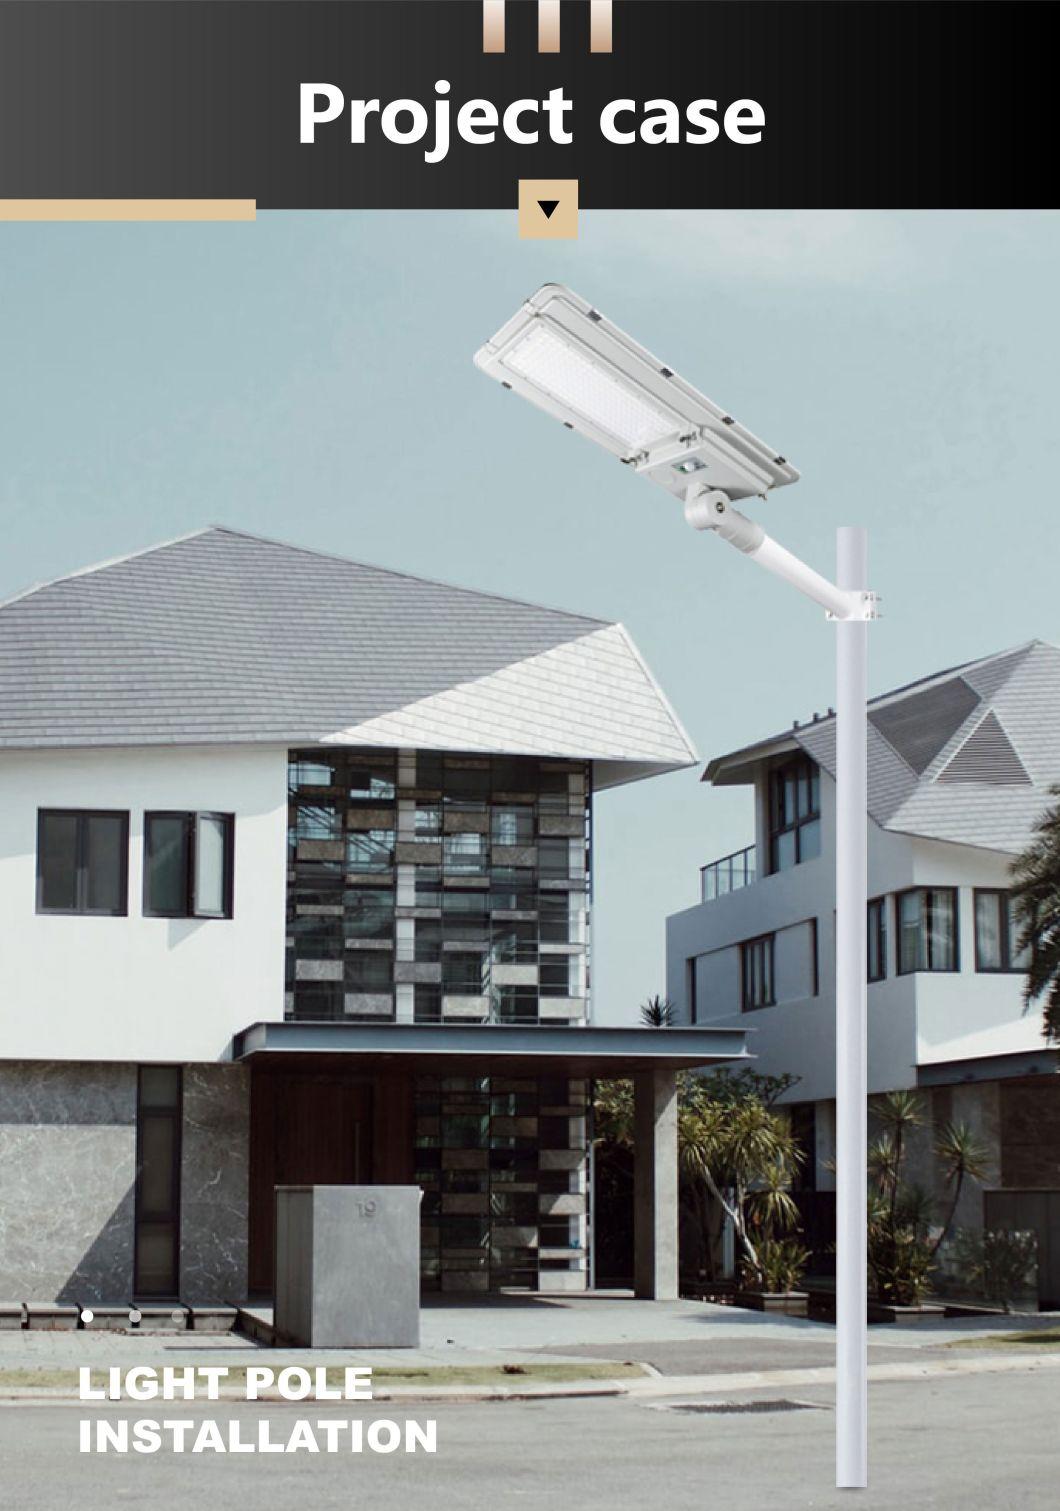 High Quality Solar Street Light Die-Casting Aluminum Housing LED Lamp Smart Control Outside Lighting